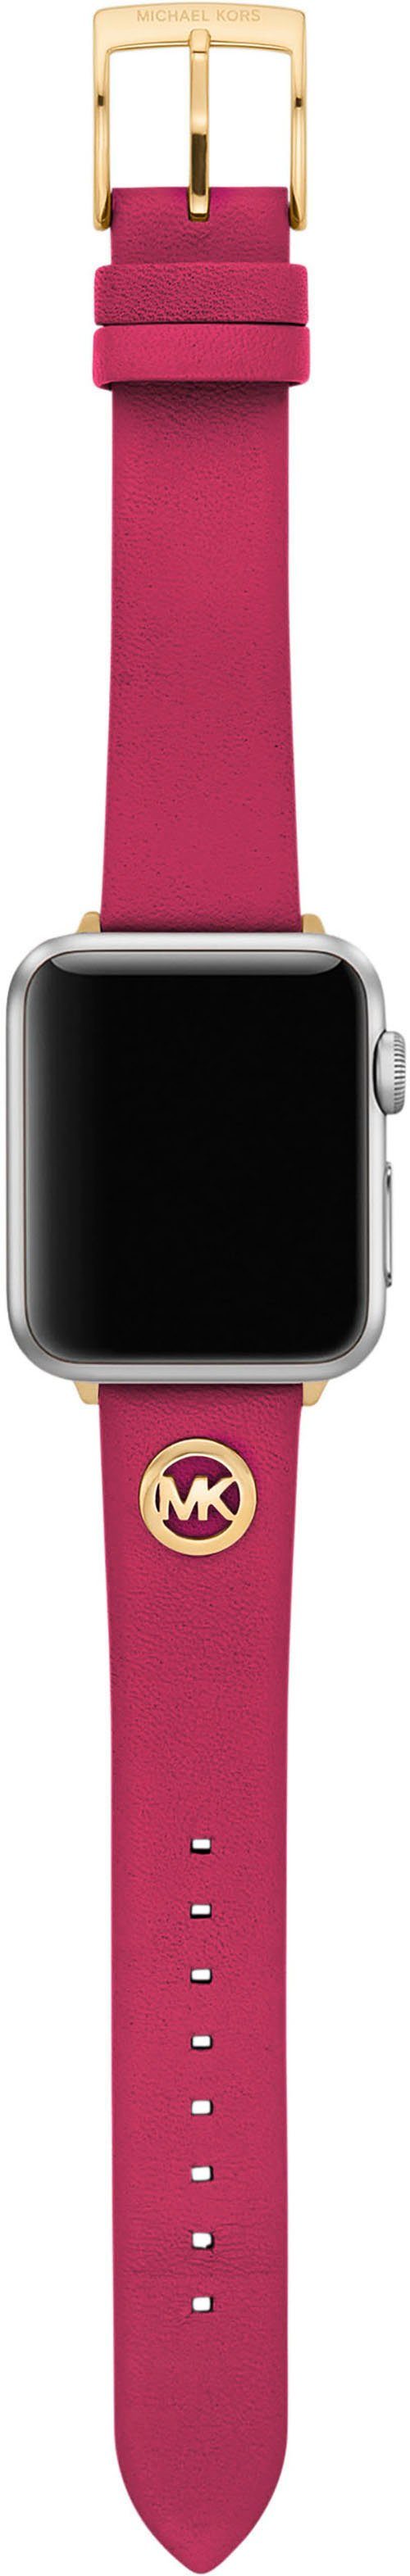 MICHAEL KORS Smartwatch-Armband ideal for als Bands WATCH, MKS8061E, auch Geschenk APPLE